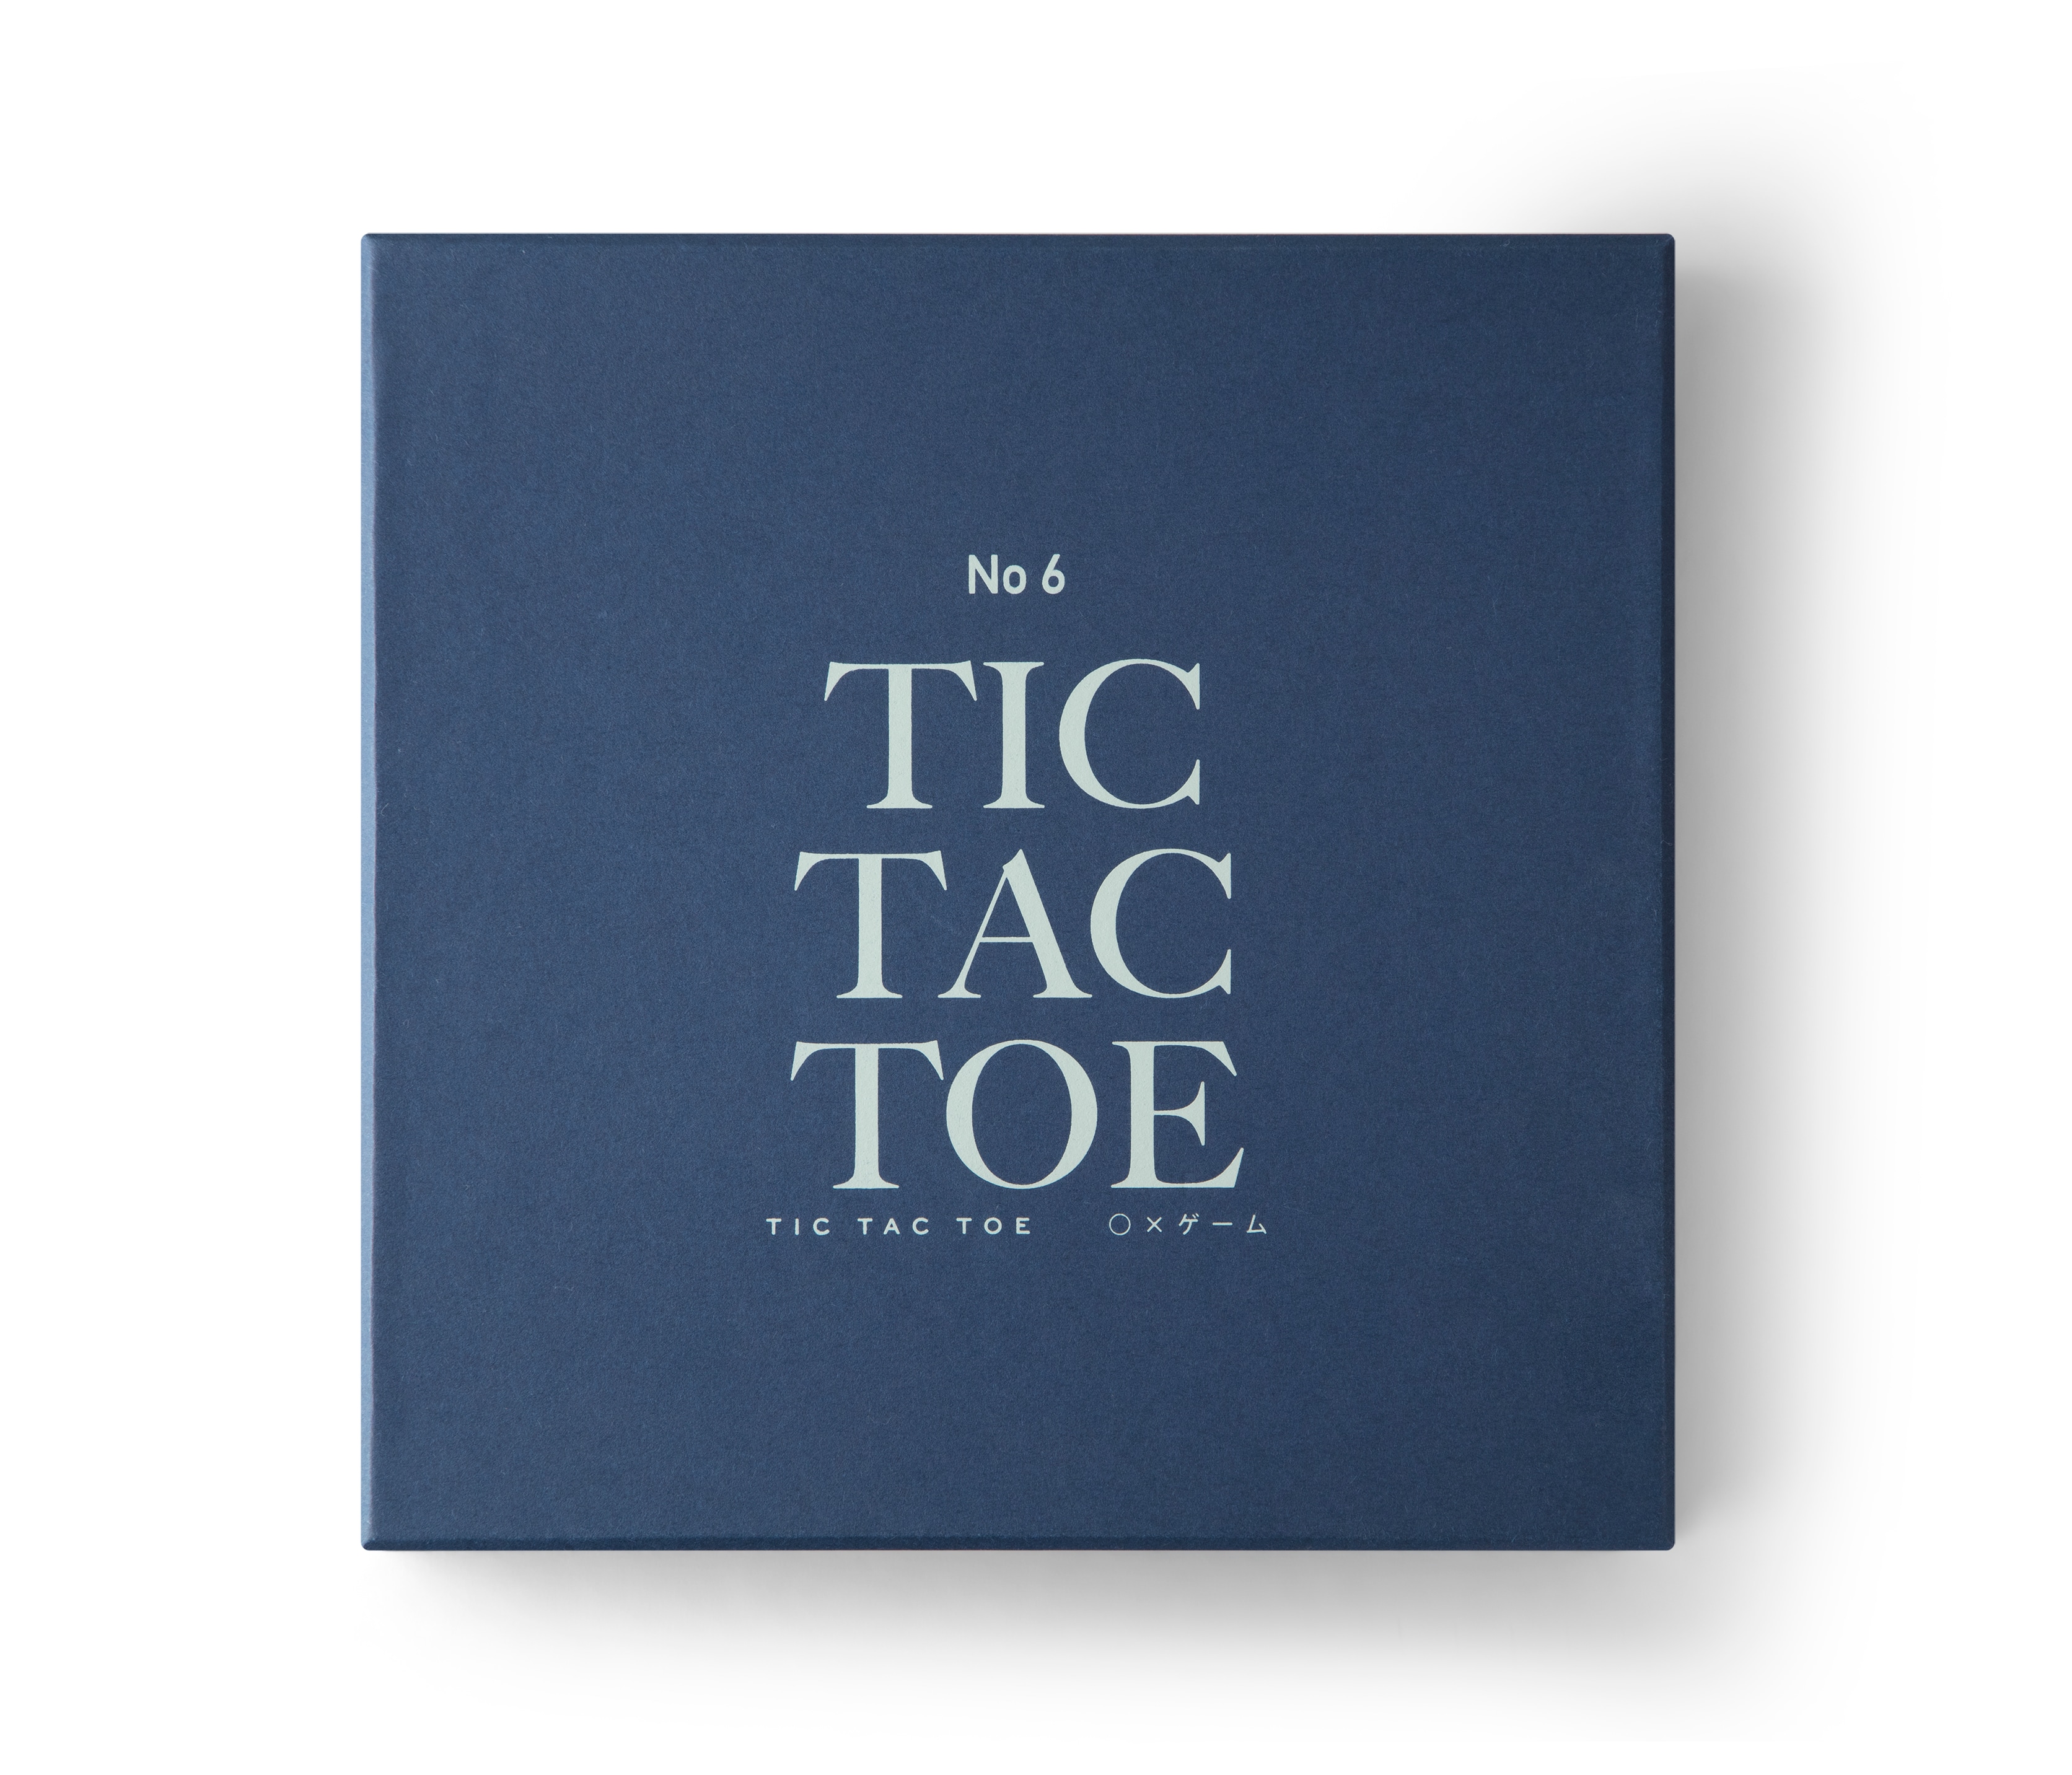 Tic Tac Toe Classic